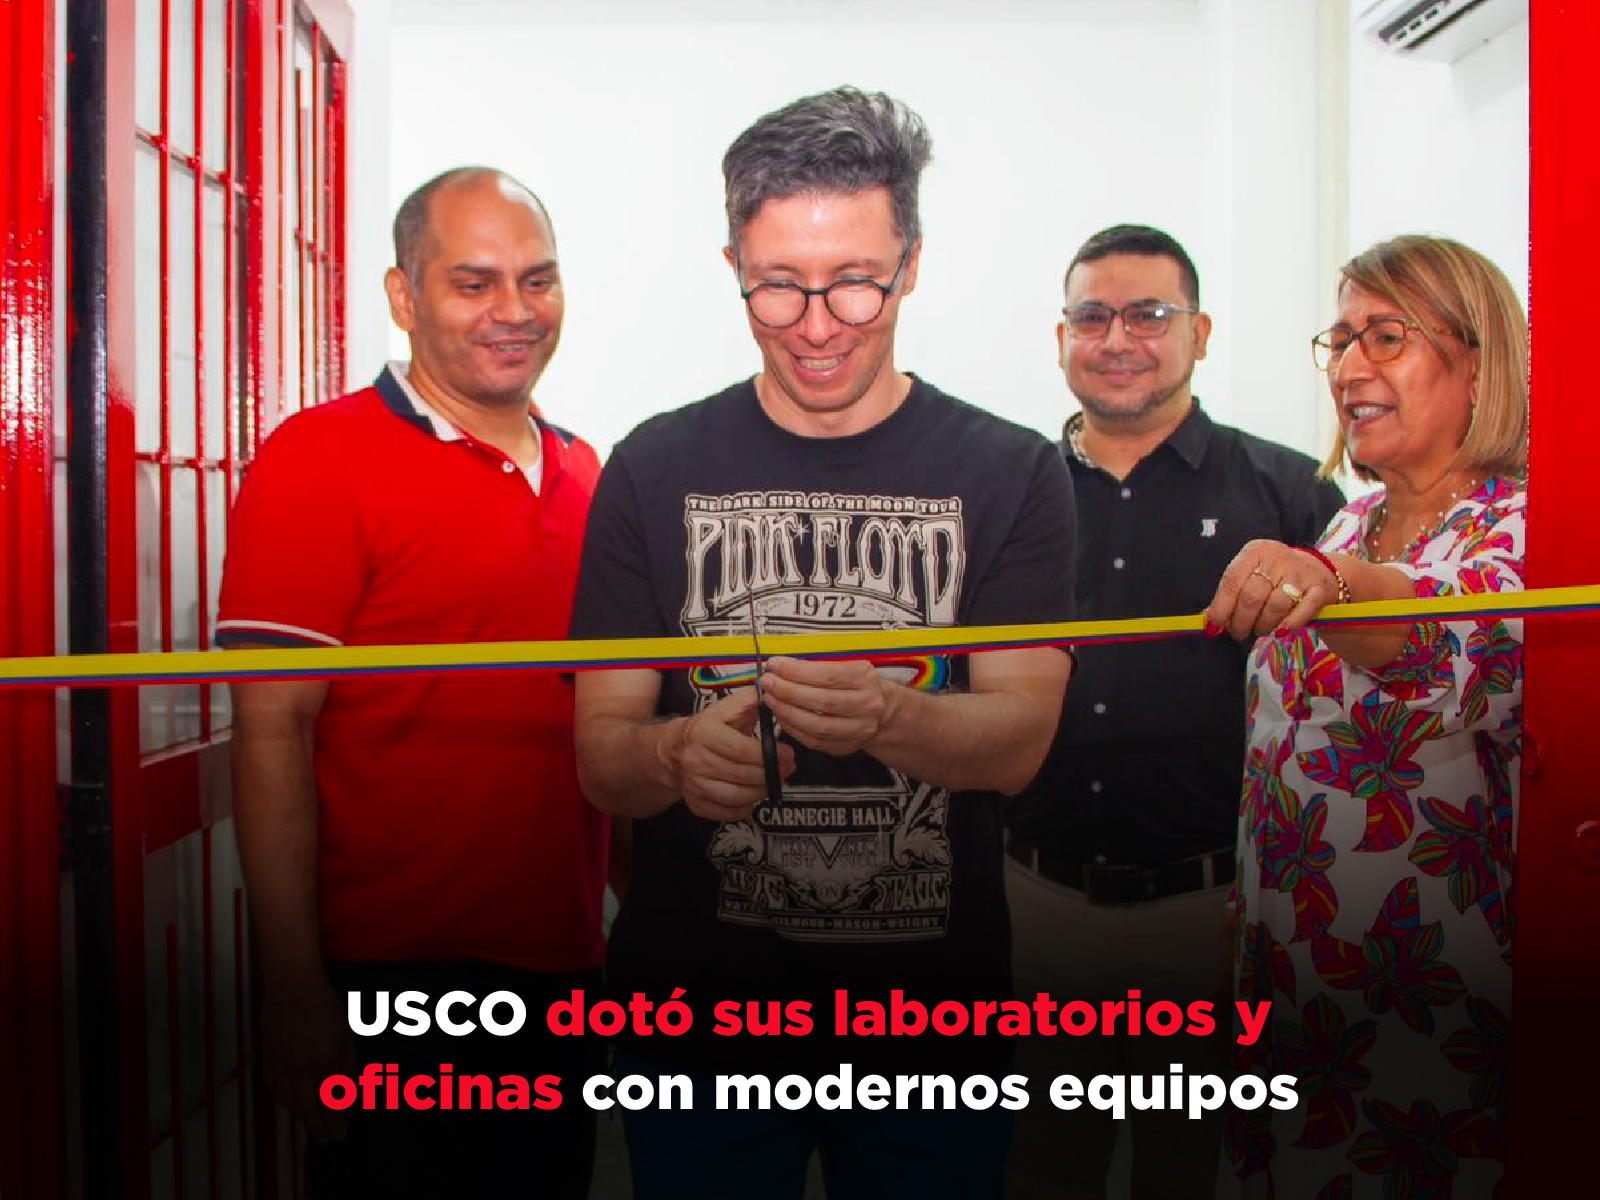 USCO dotó sus laboratorios y oficinas con modernos equipos